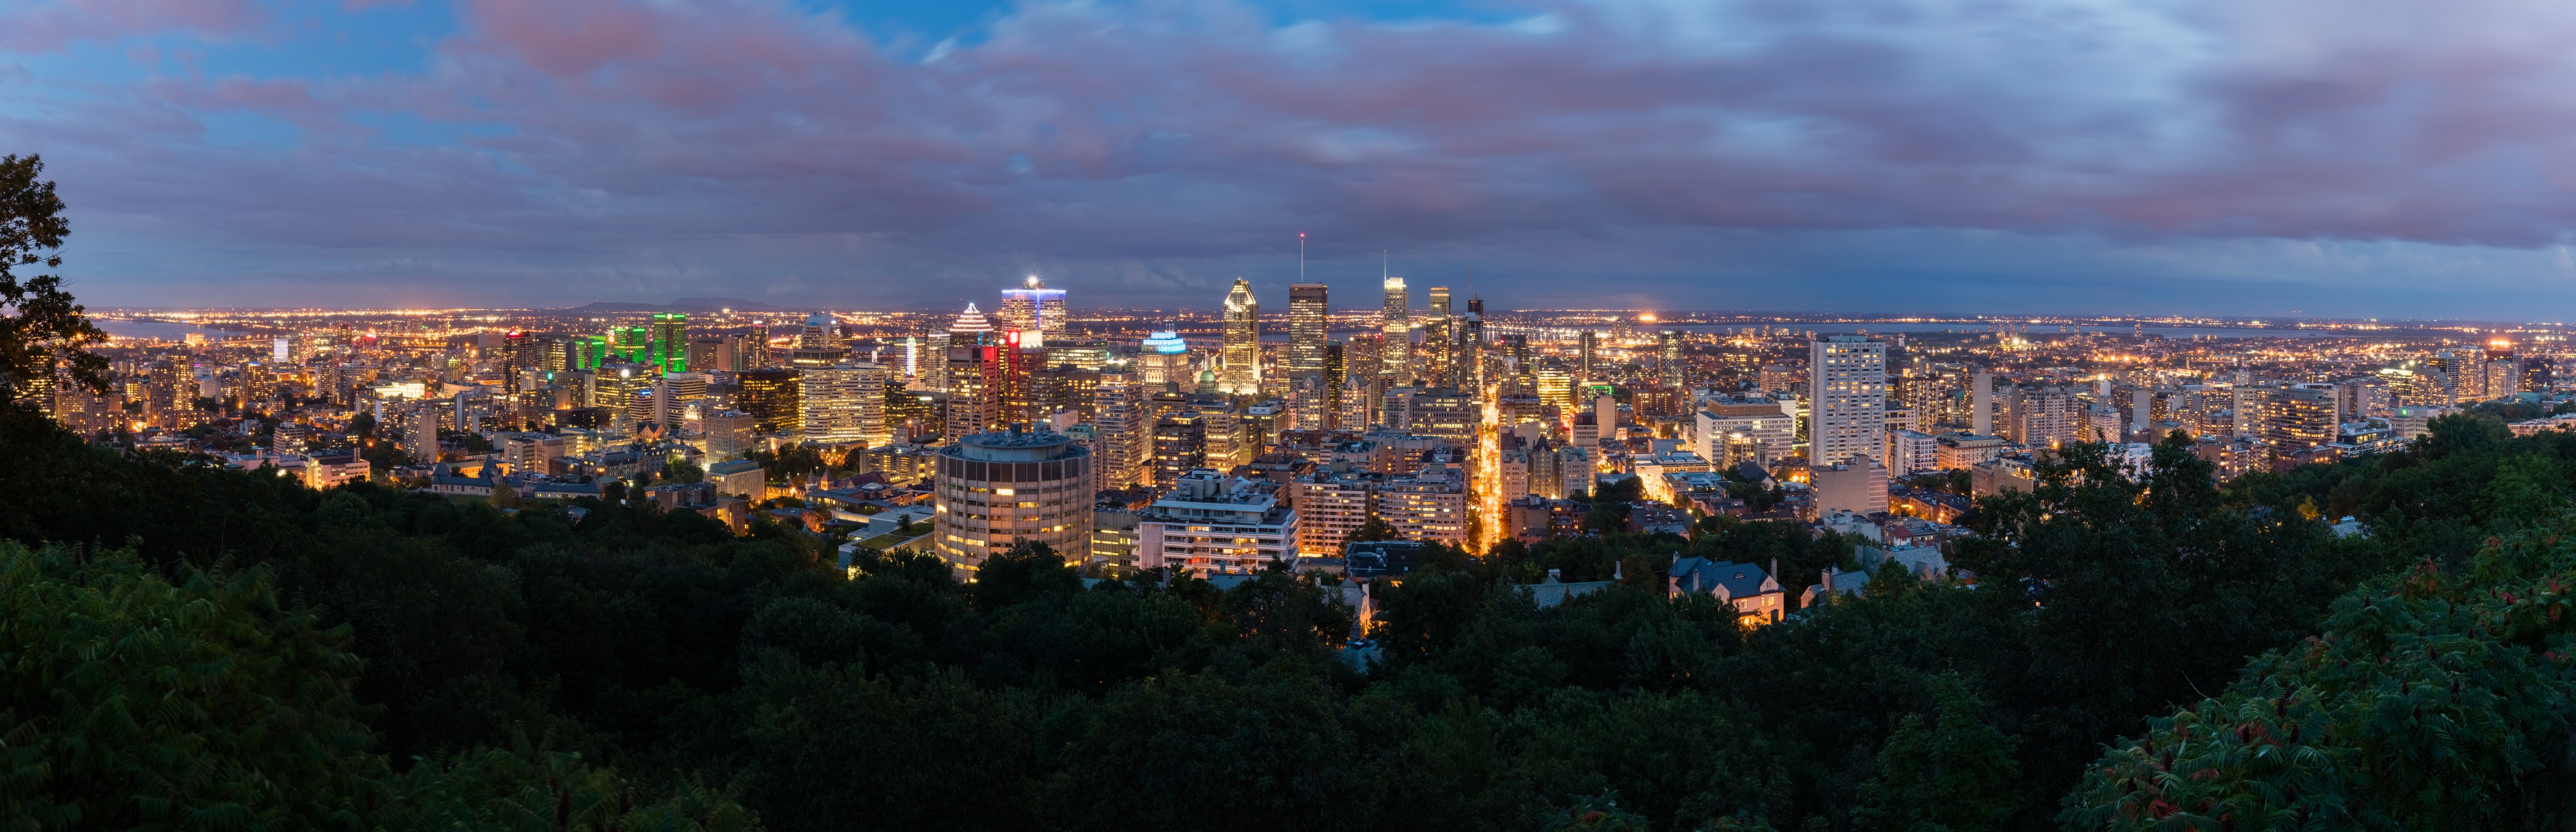 Vista de Montreal desde el Monte Royal, Canadá, 2017-08-12, DD 93-107 HDR PAN